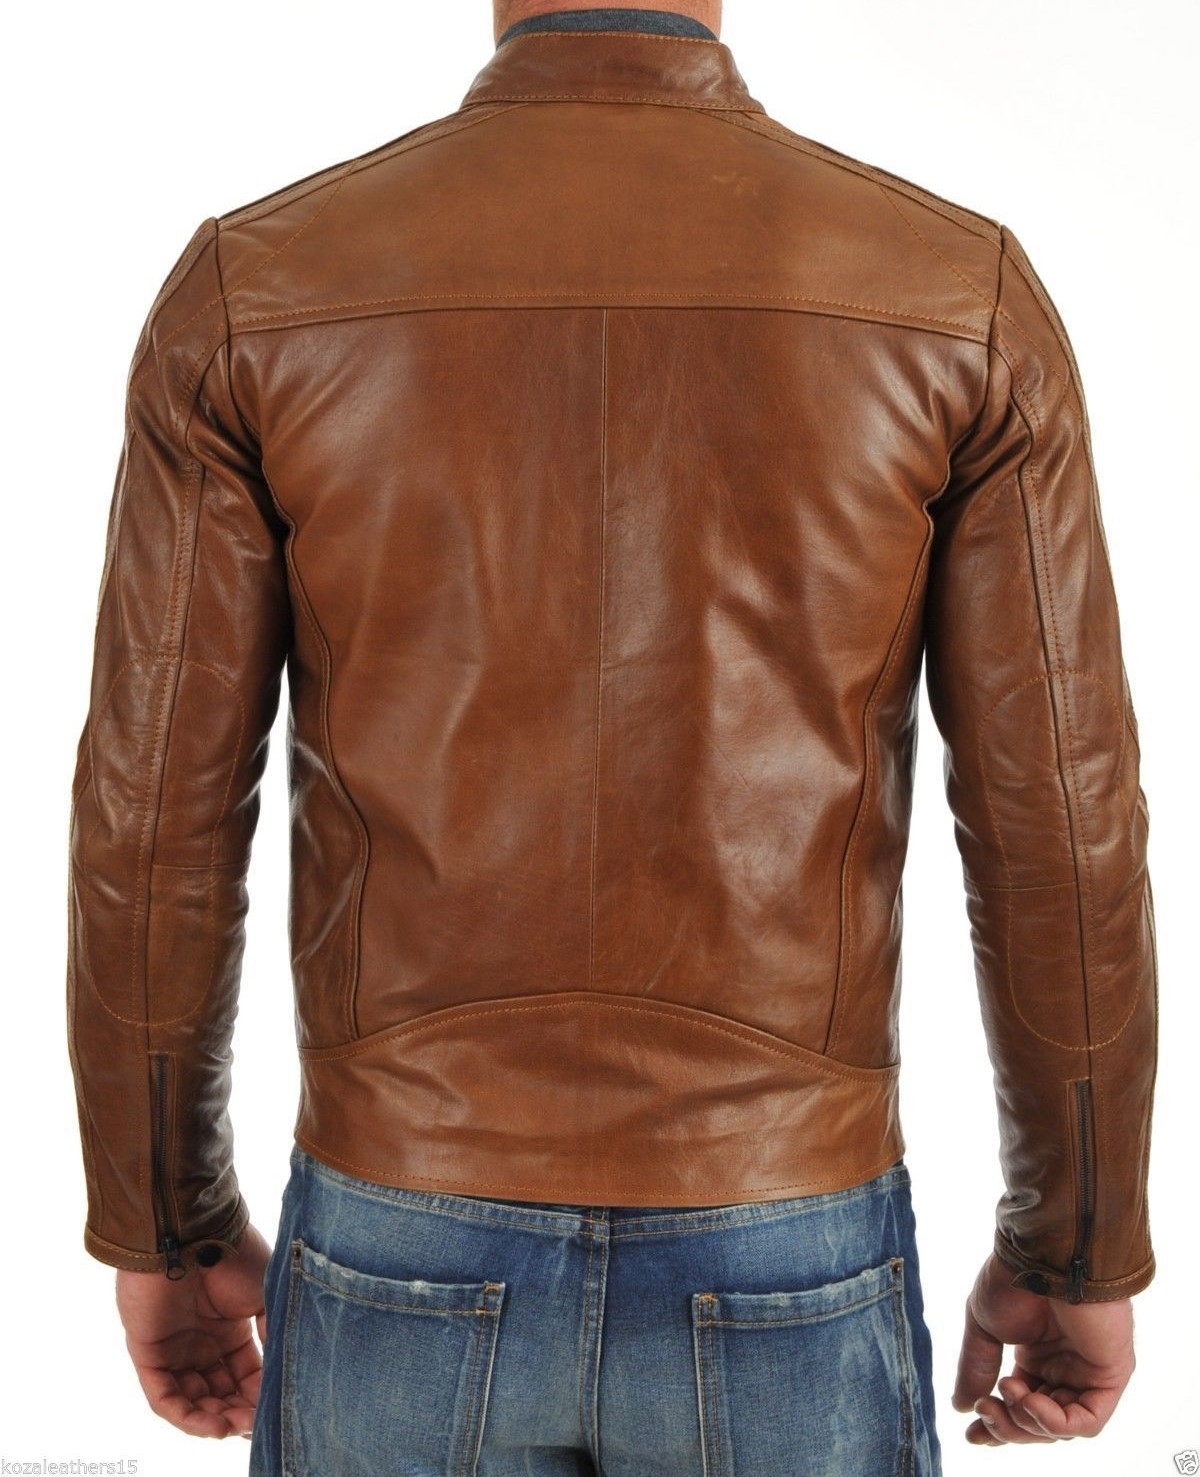 Urbanhides Steelheart Sentinel Biker Leather Jacket for Men Custom Made